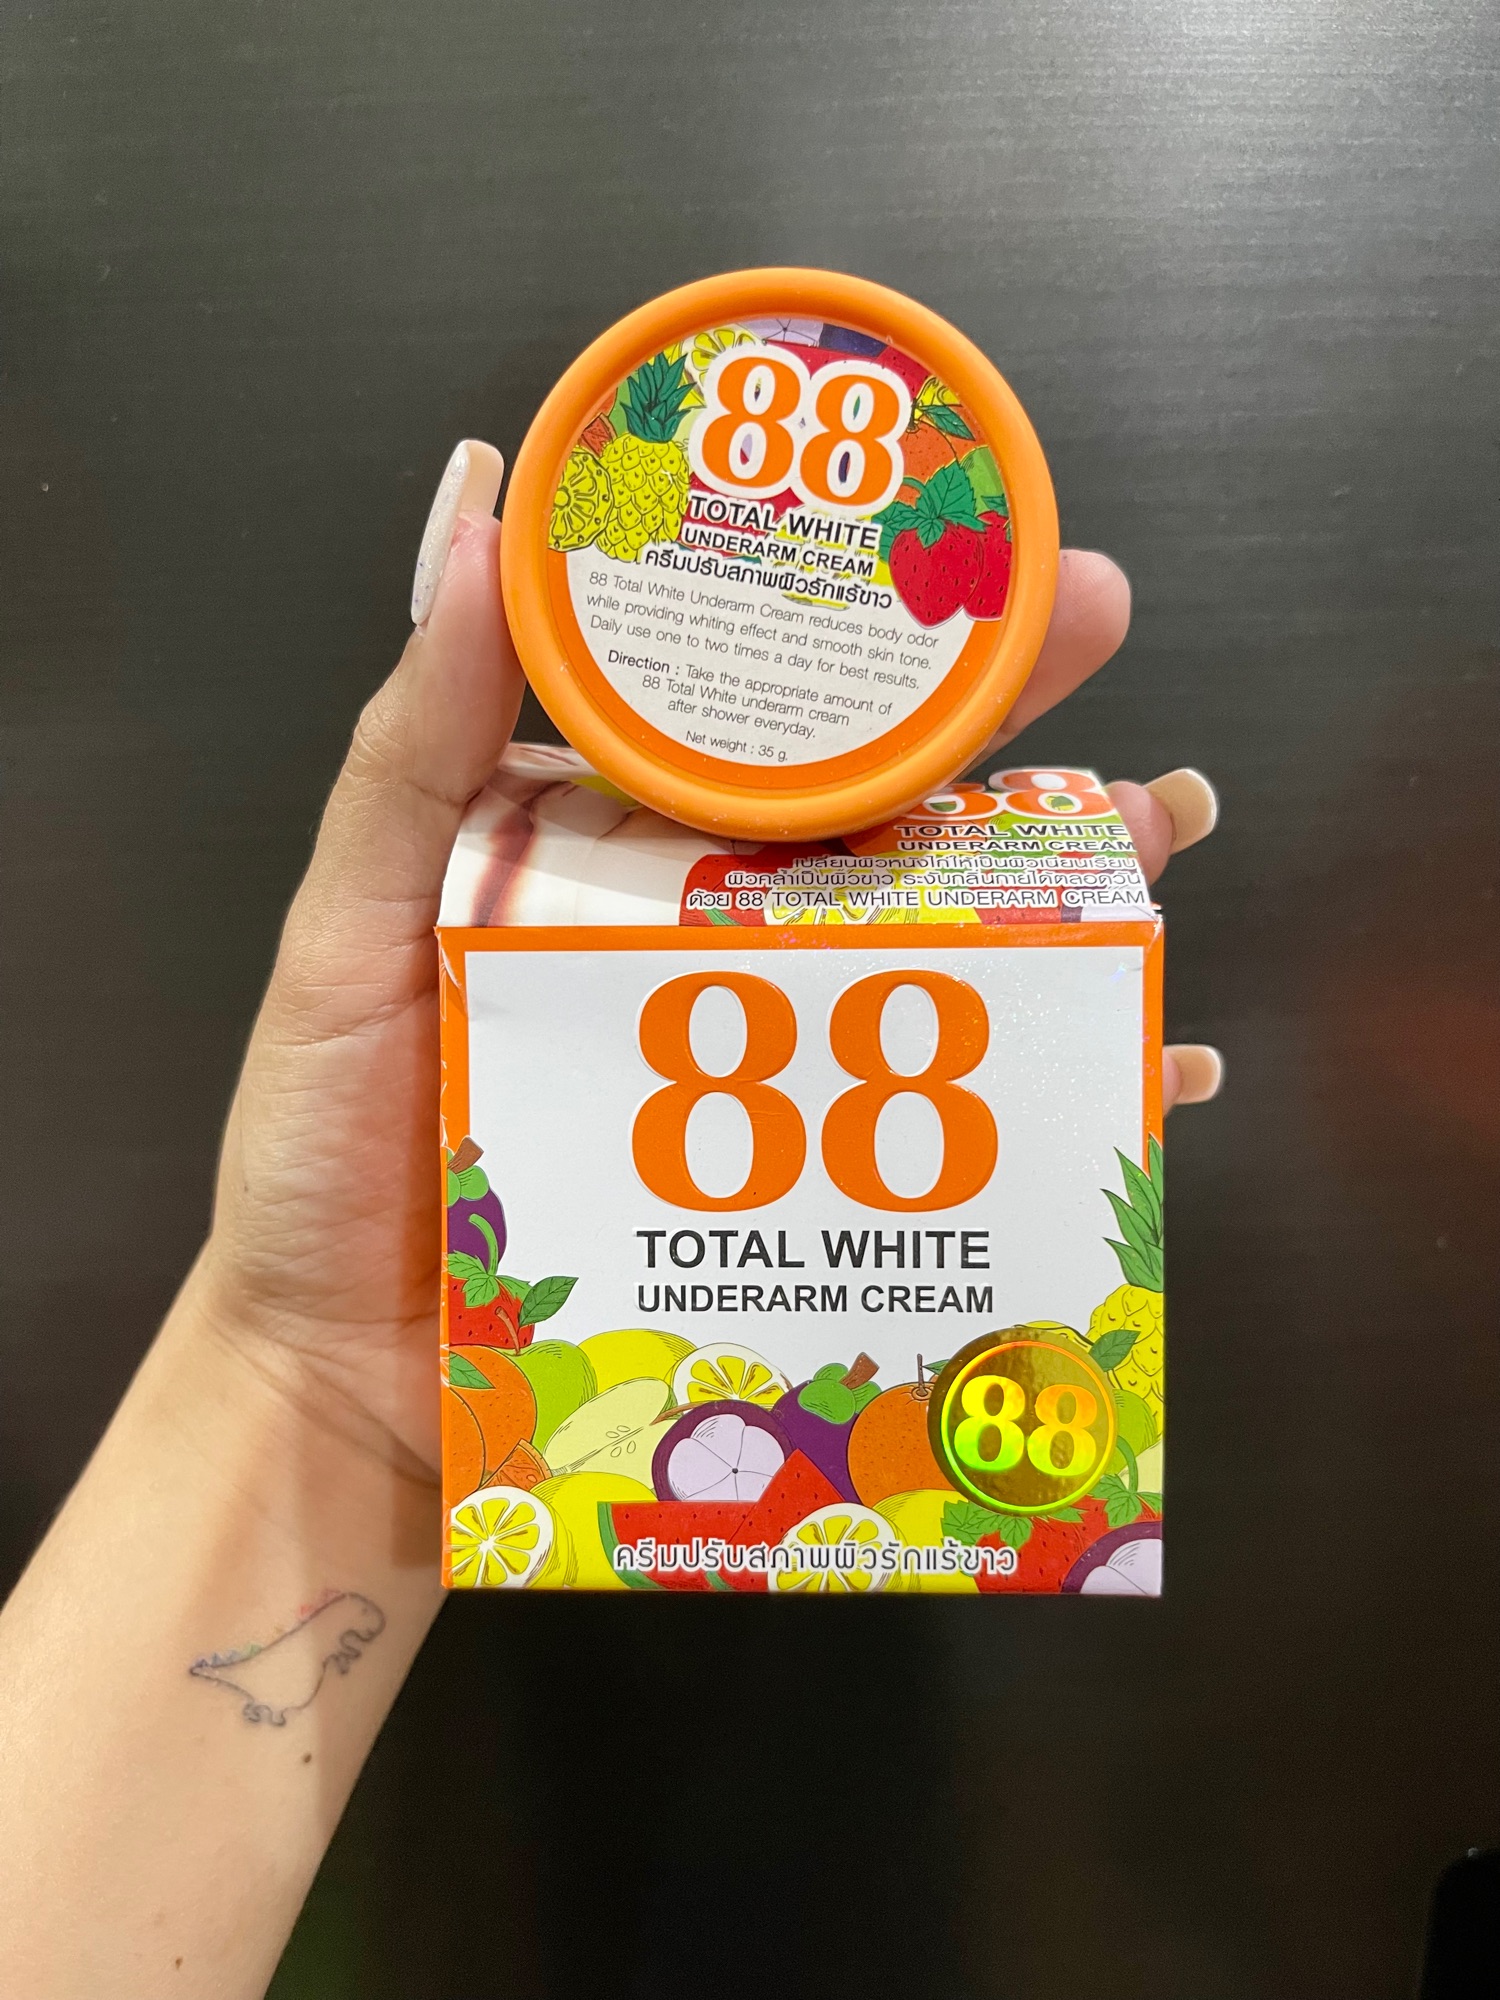 高い品質 8888 under arm whitening cream